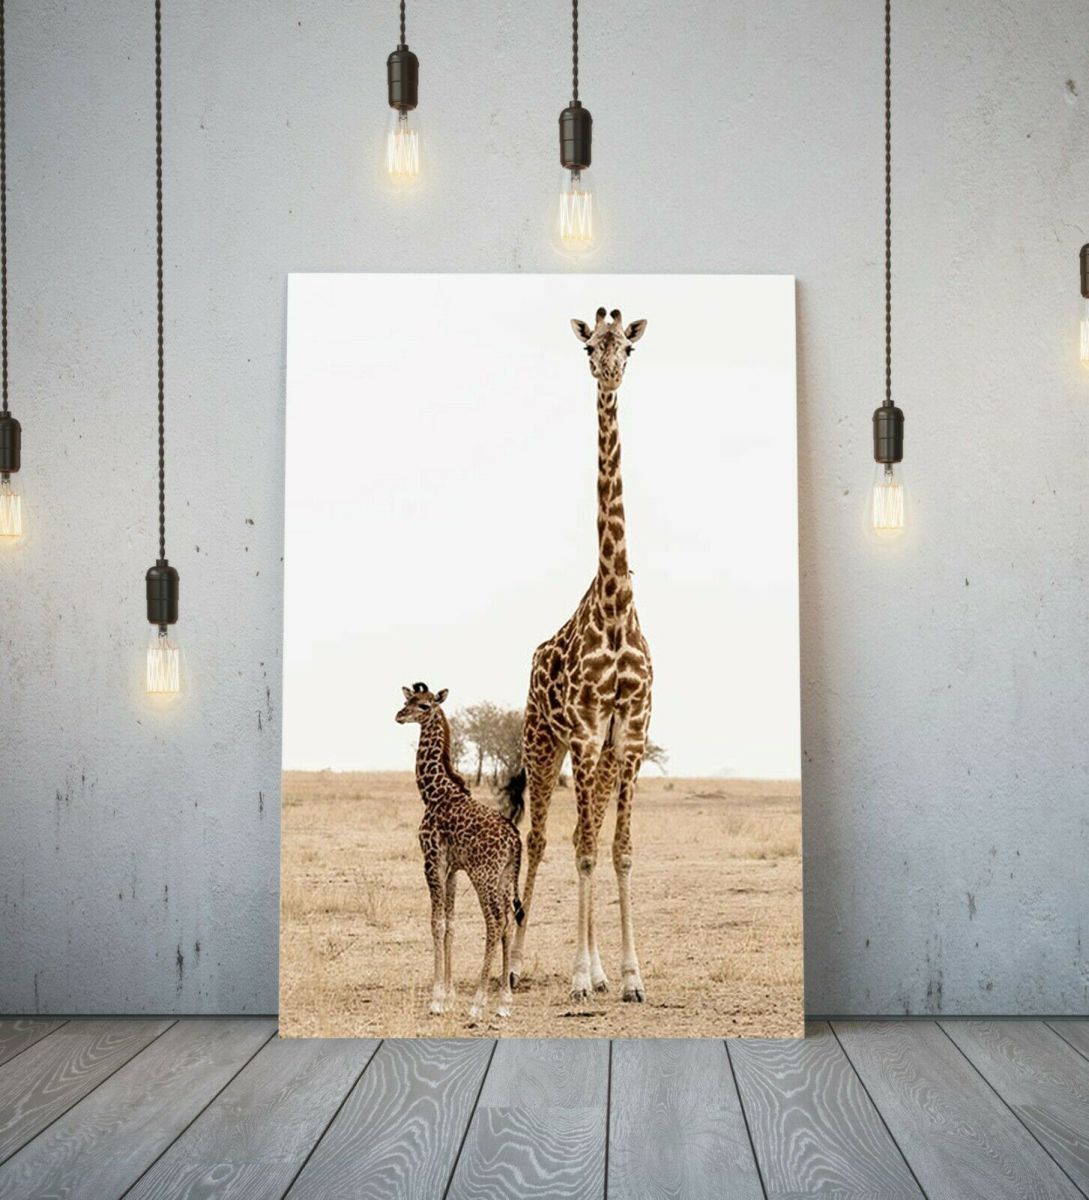 Жираф Высокое качество холст рамка плакат картина А1 художественная панель скандинавский жираф животное животное за рубежом фото товары живопись разное интерьер 4, Печатные материалы, Плакат, другие